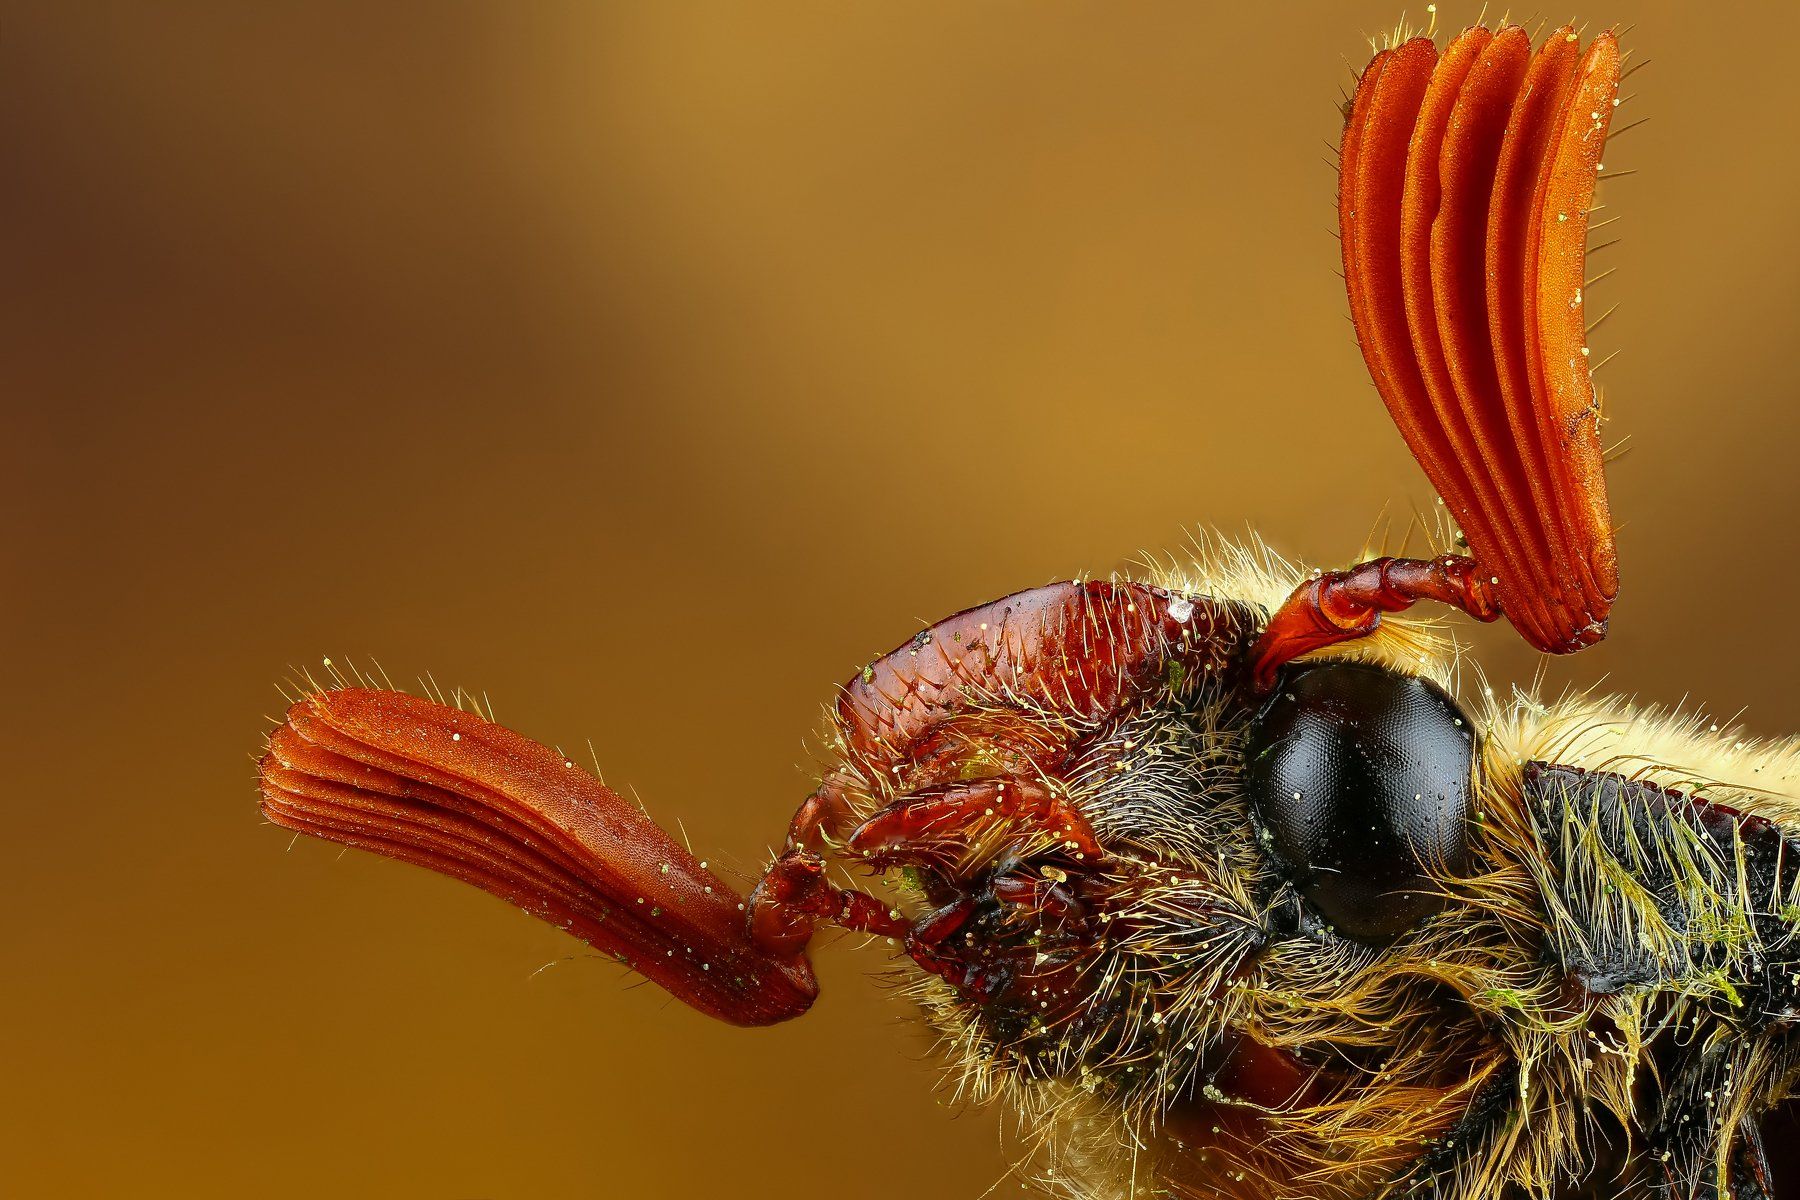 жук,макро,природа,усы,цвет,желтый,оранжевый,коричневый,насекомое, Андрей Шаповалов